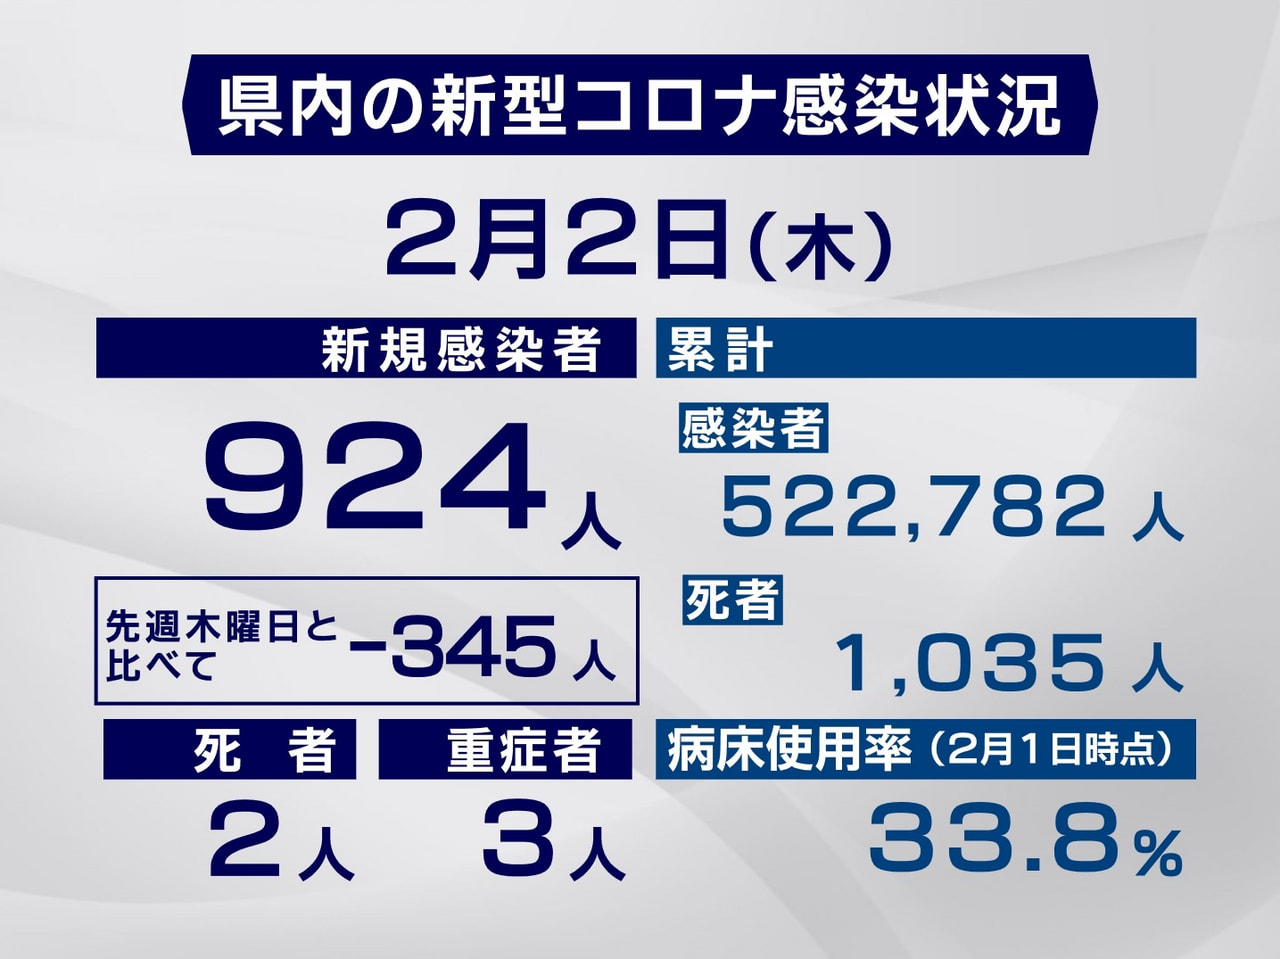 岐阜県と岐阜市は２日、新型コロナウイルスの感染者が新たに９２４人、また、２人の死...